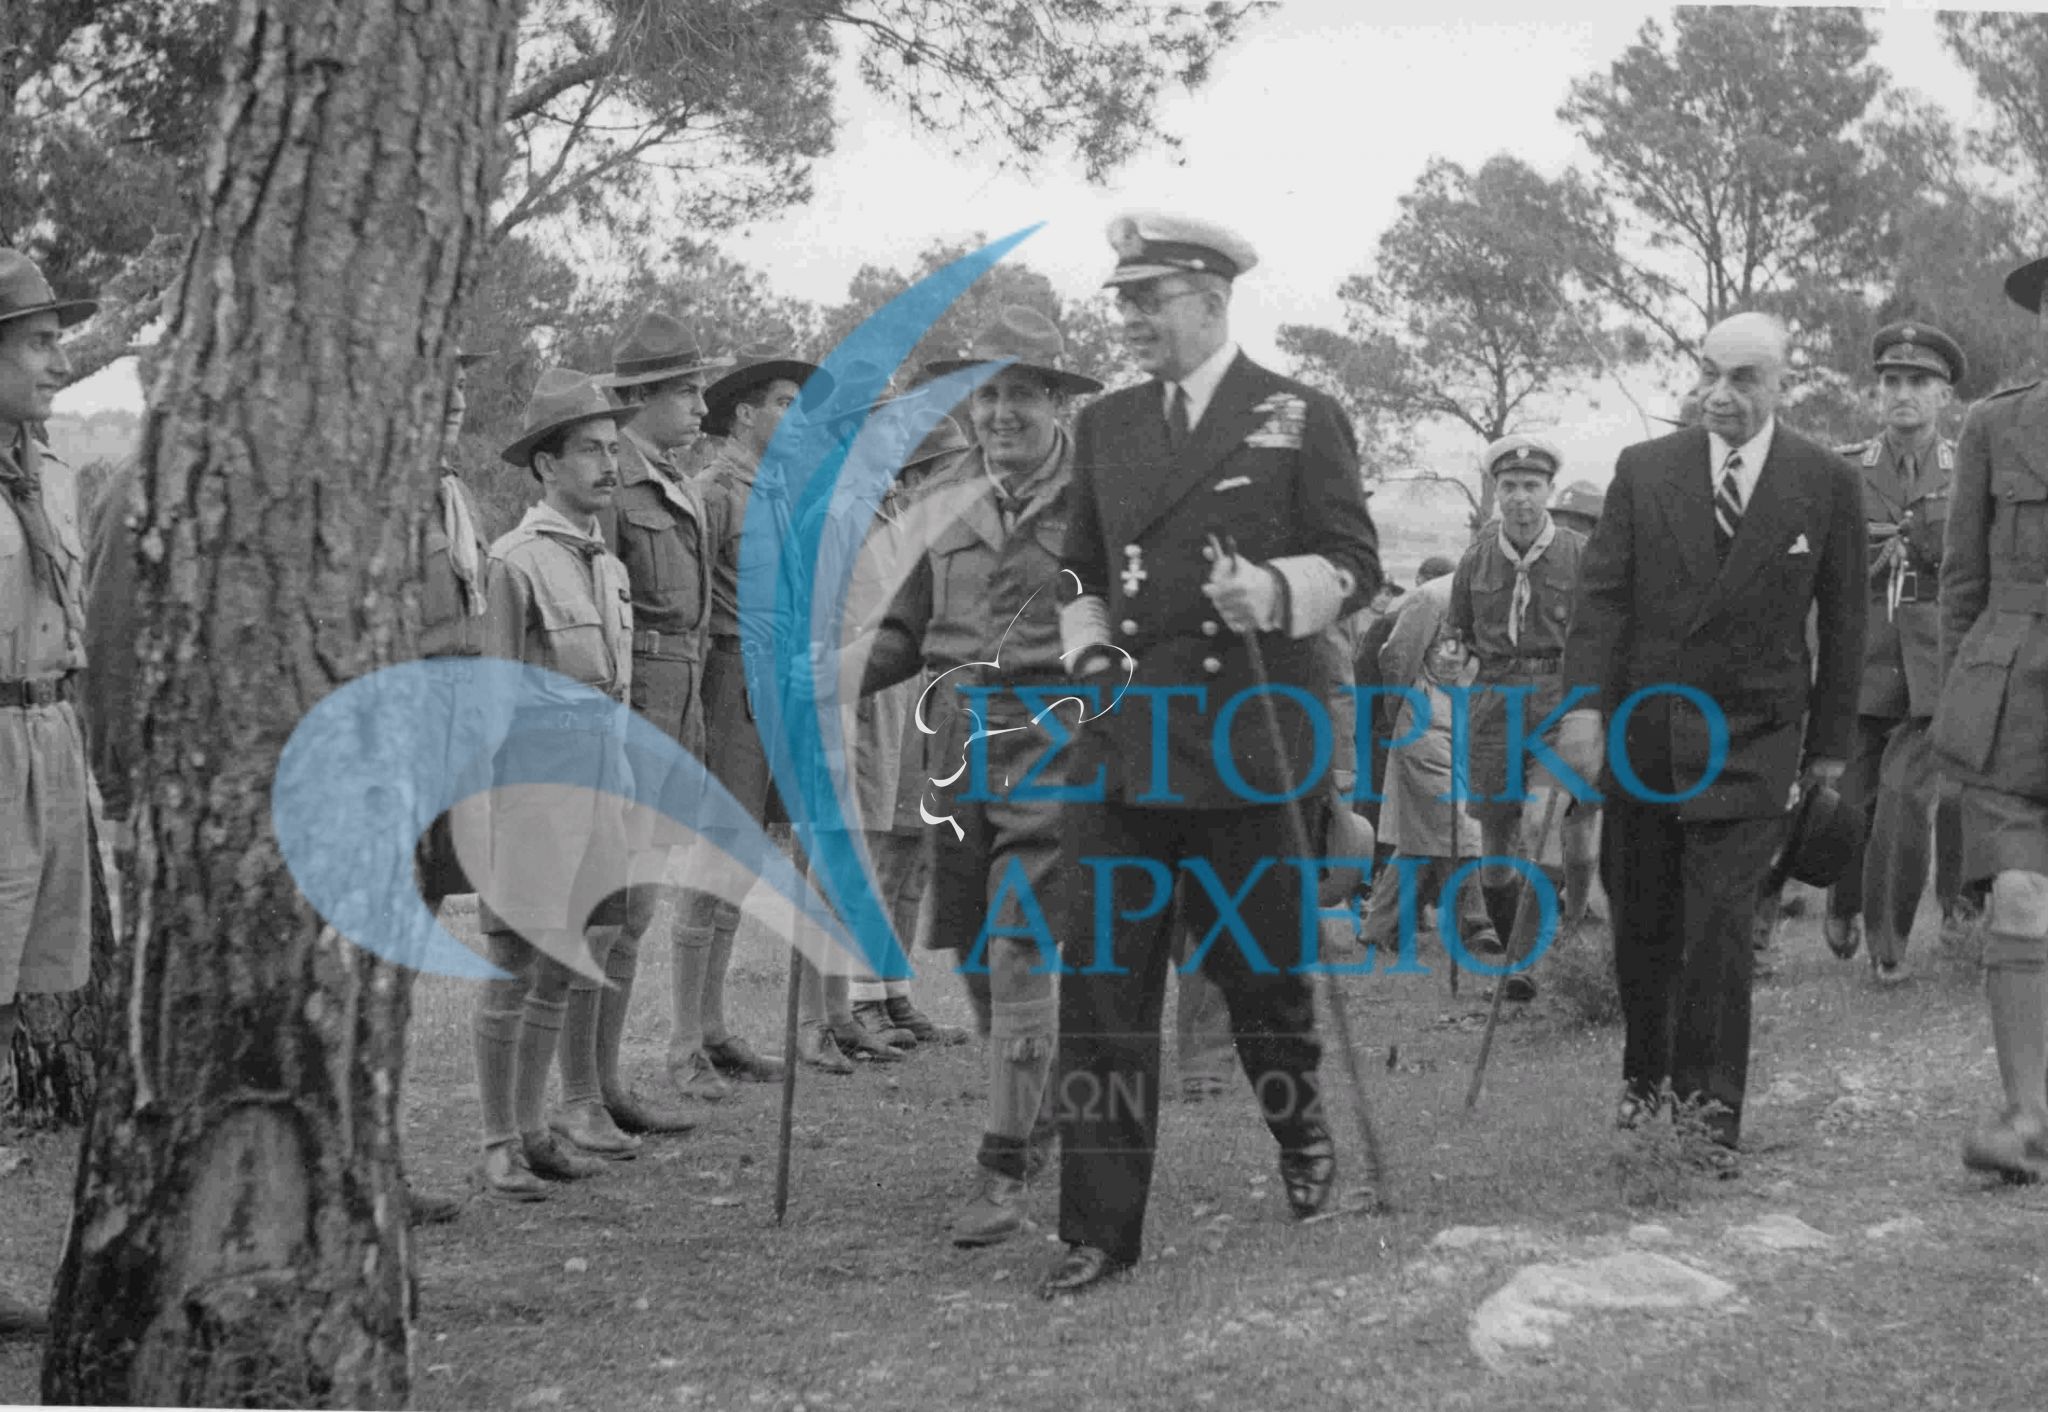 Επίσκεψη του Βασιλιά Παύλου στο Πανελλήνιο Τζάμπορη του Διονύσου το 1950.